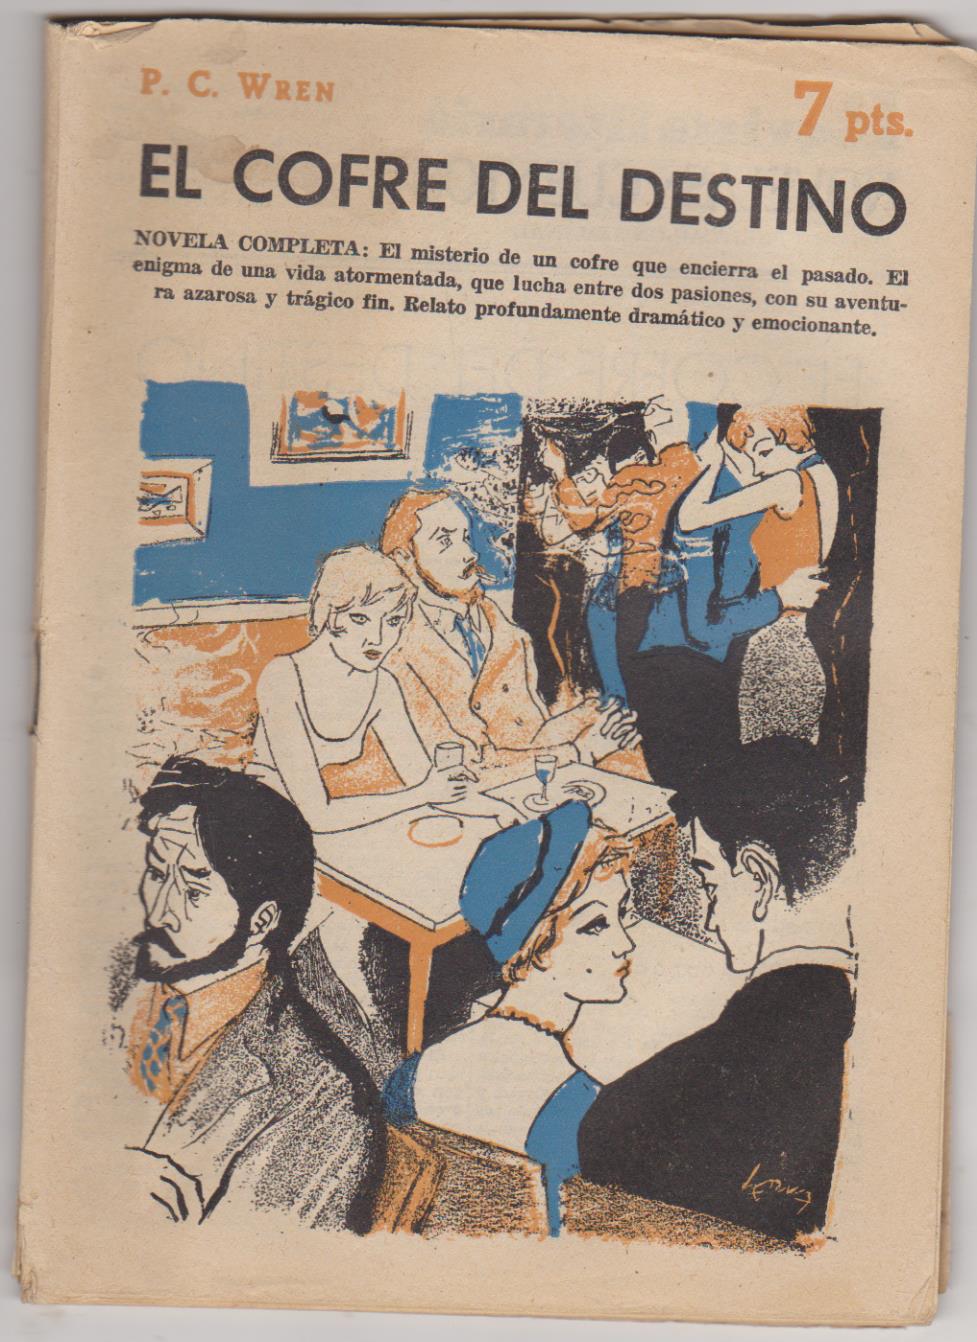 Revista Literaria nº 1399. P. C. Wren. El cofre del destino. Año 1959